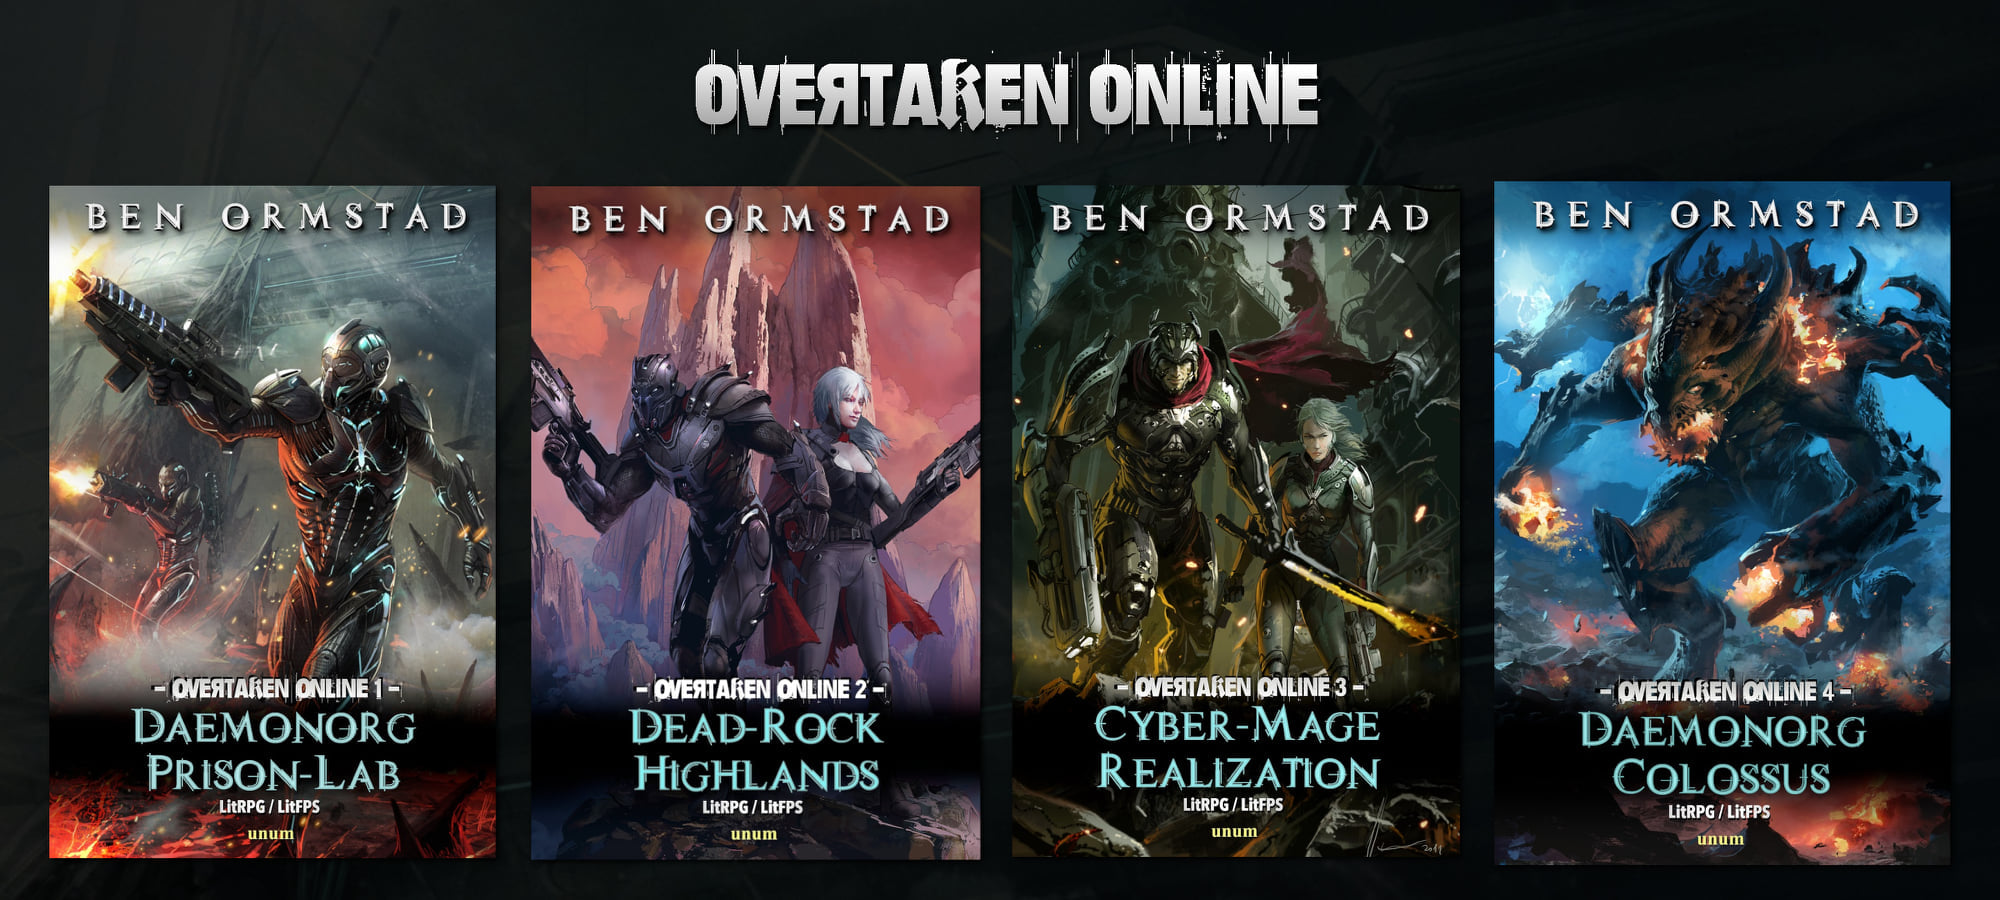 Overtaken Online - By Ben Ormstad